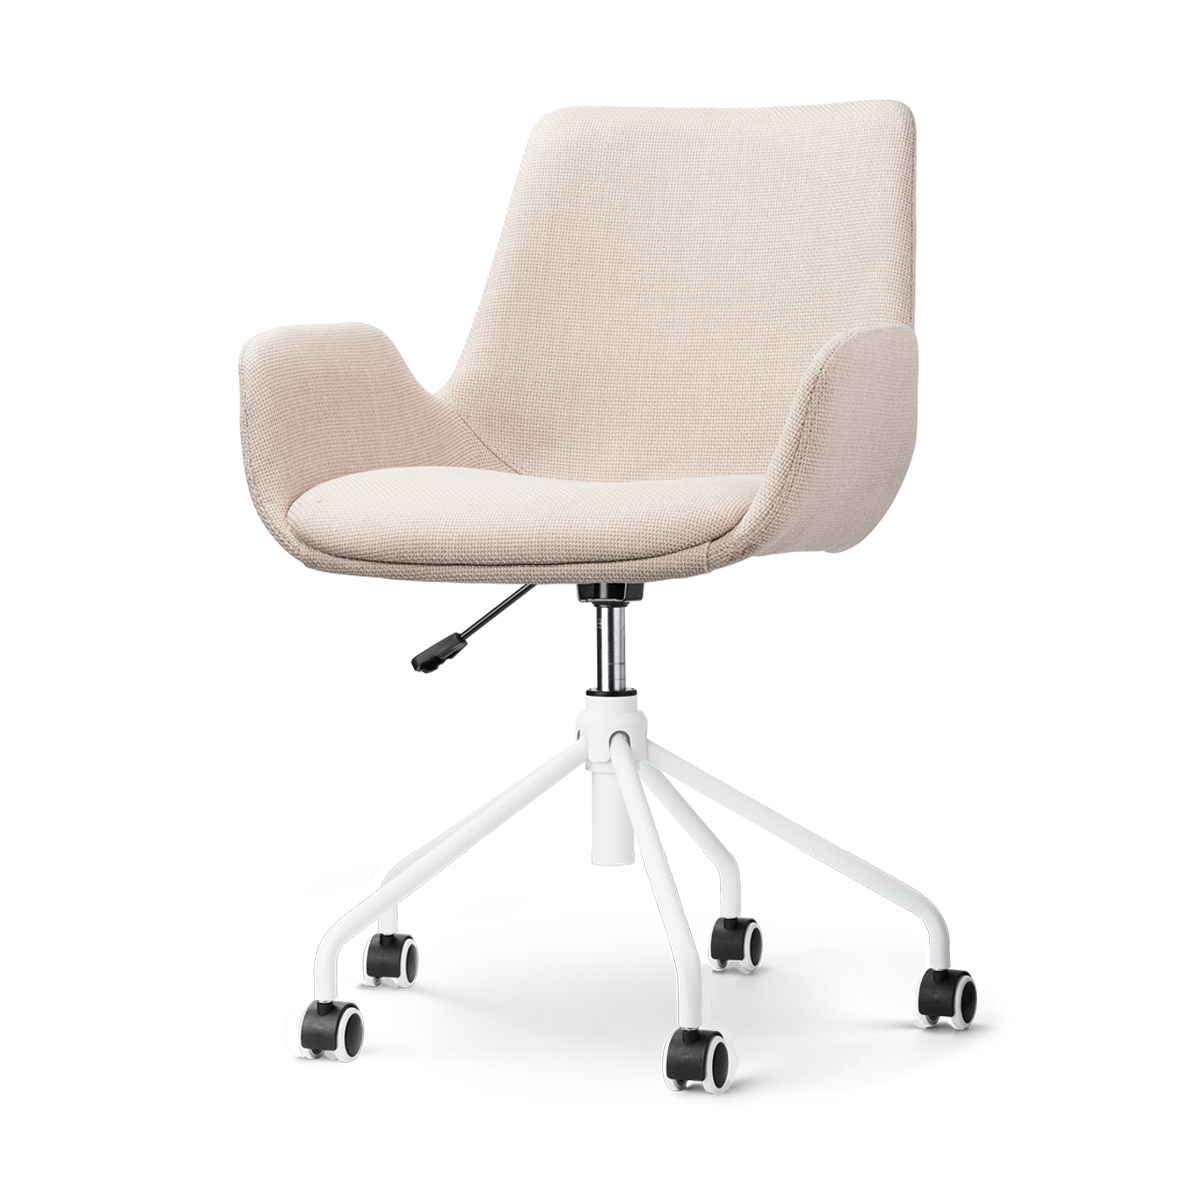 Nout-Eef bureaustoel beige - wit onderstel